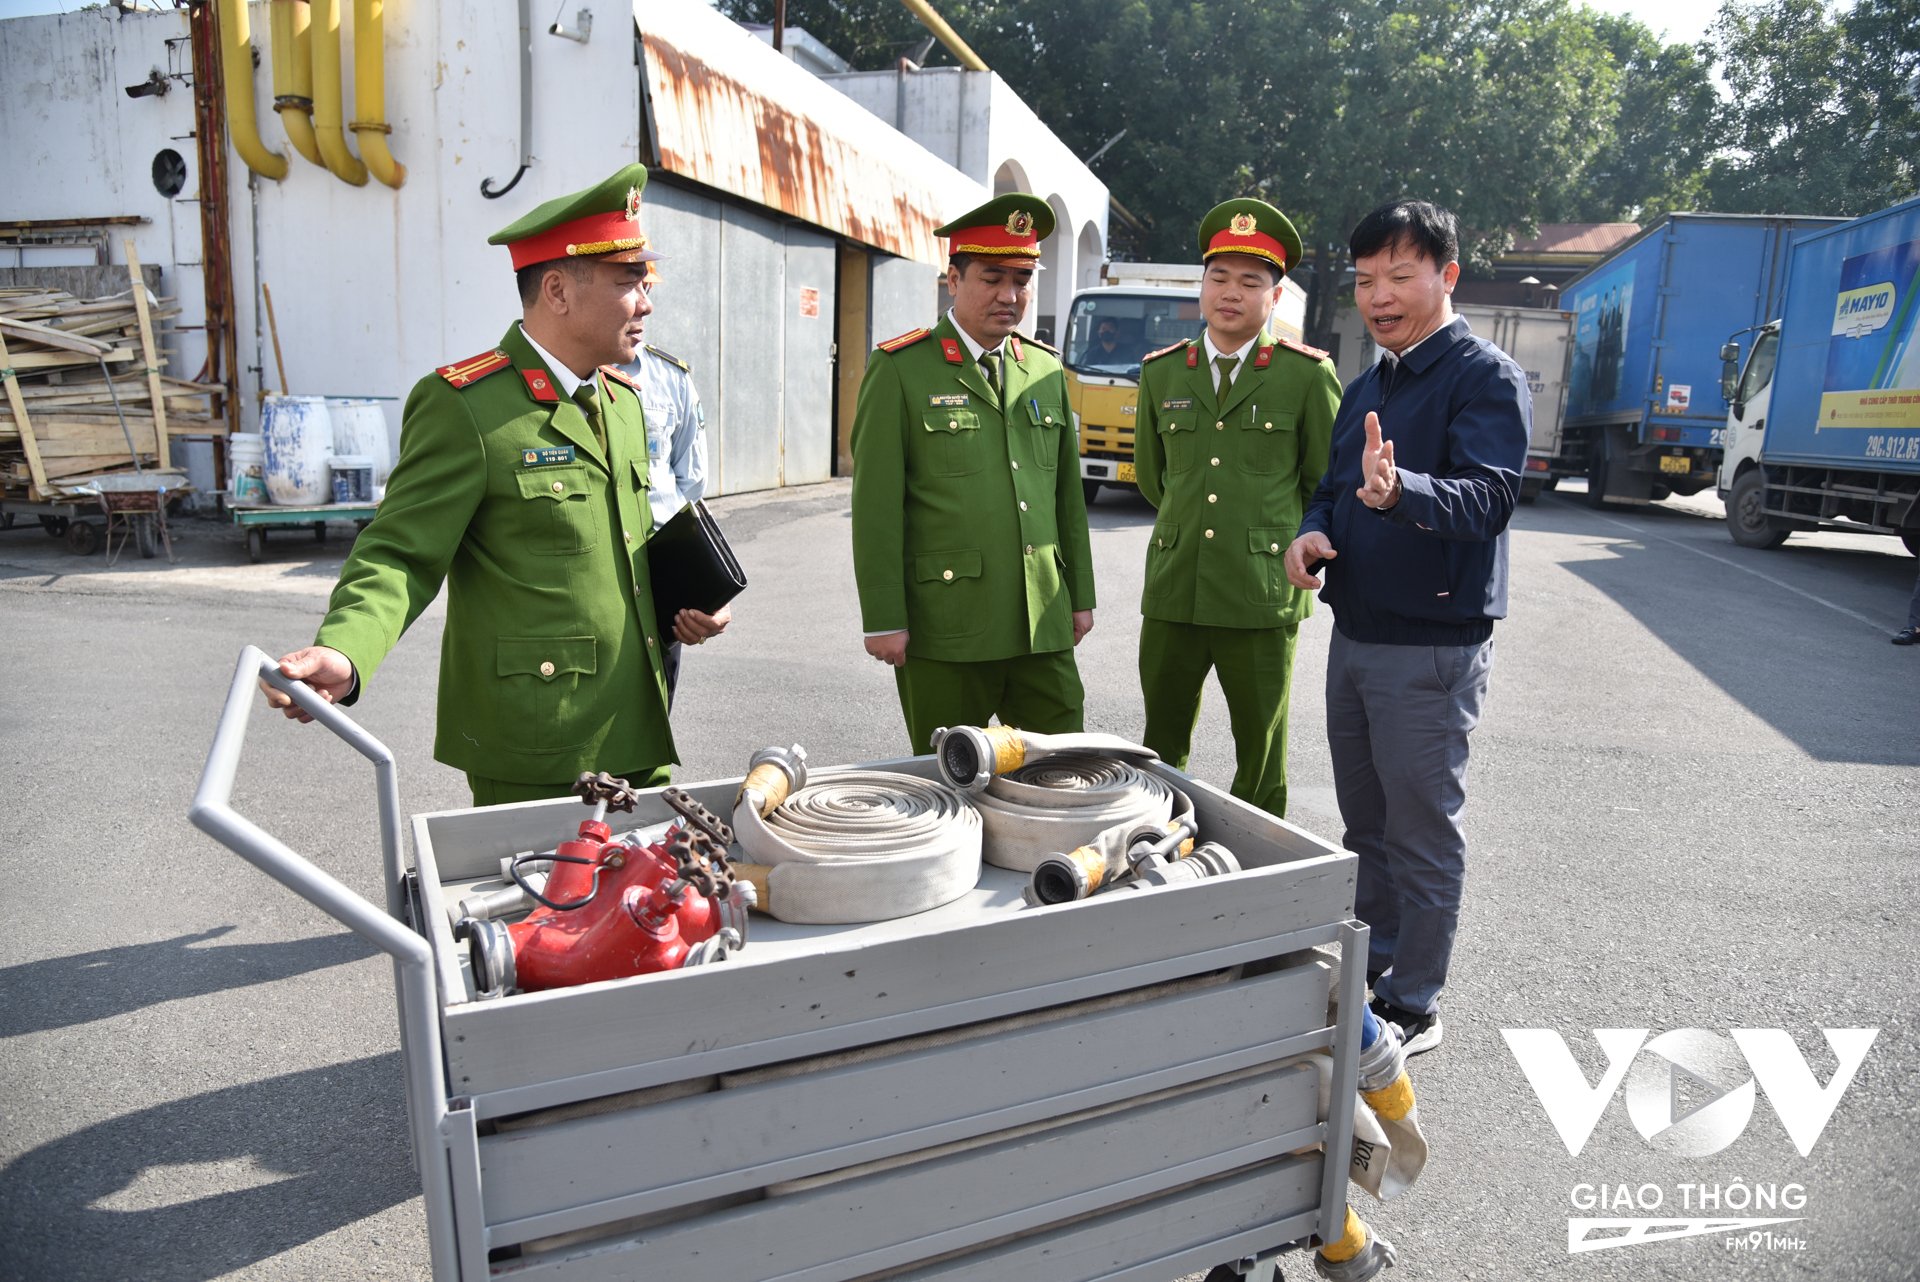 Ông Bạch Ngọc Lân (ngoài cùng bên trái) – Trưởng phòng Bảo vệ Quân sự Tổng công ty May 10 giới thiệu về chiếc xe rải vòi bán tự động